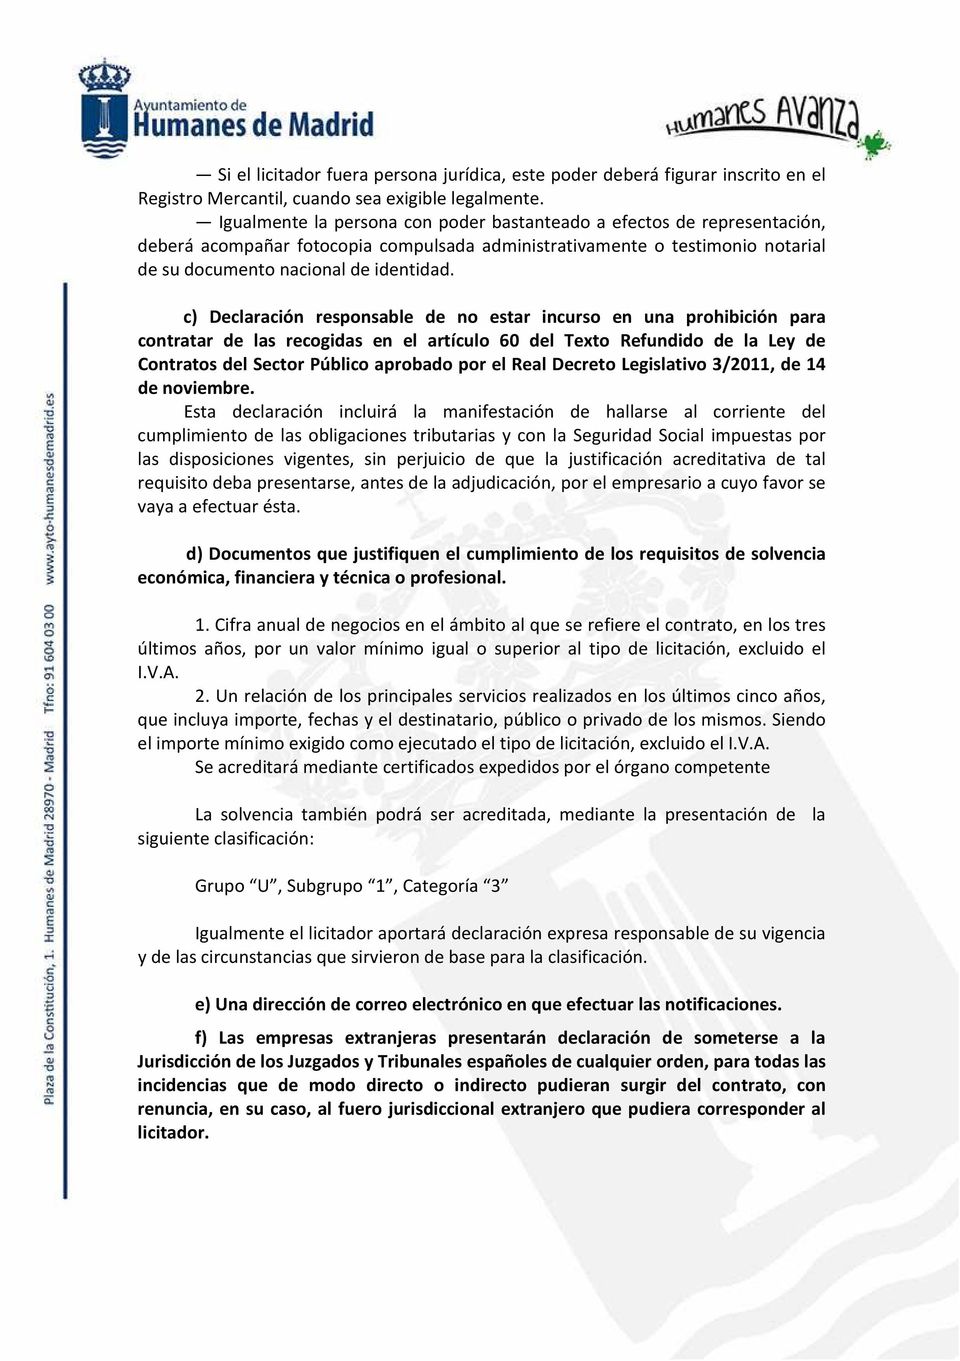 c) Declaración responsable de no estar incurso en una prohibición para contratar de las recogidas en el artículo 60 del Texto Refundido de la Ley de Contratos del Sector Público aprobado por el Real